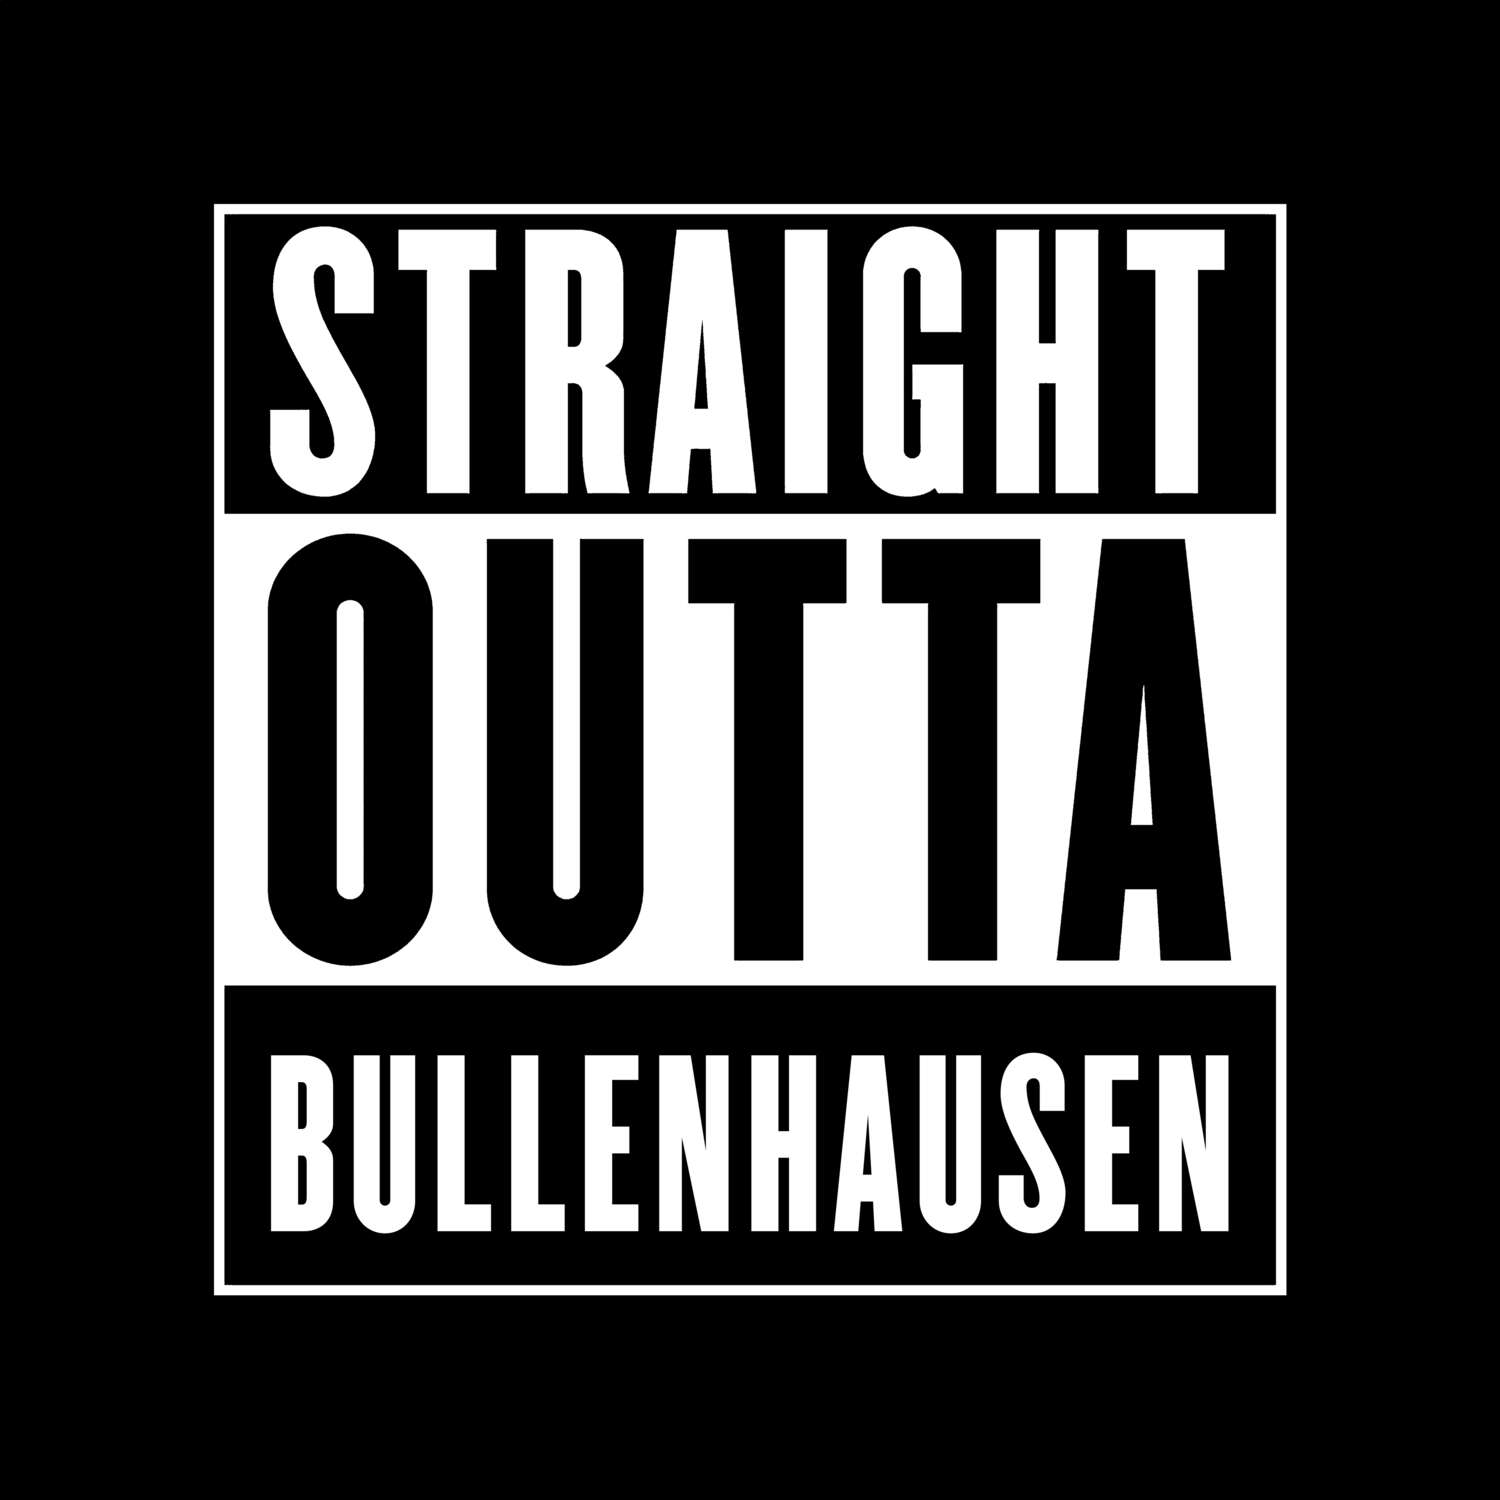 Bullenhausen T-Shirt »Straight Outta«